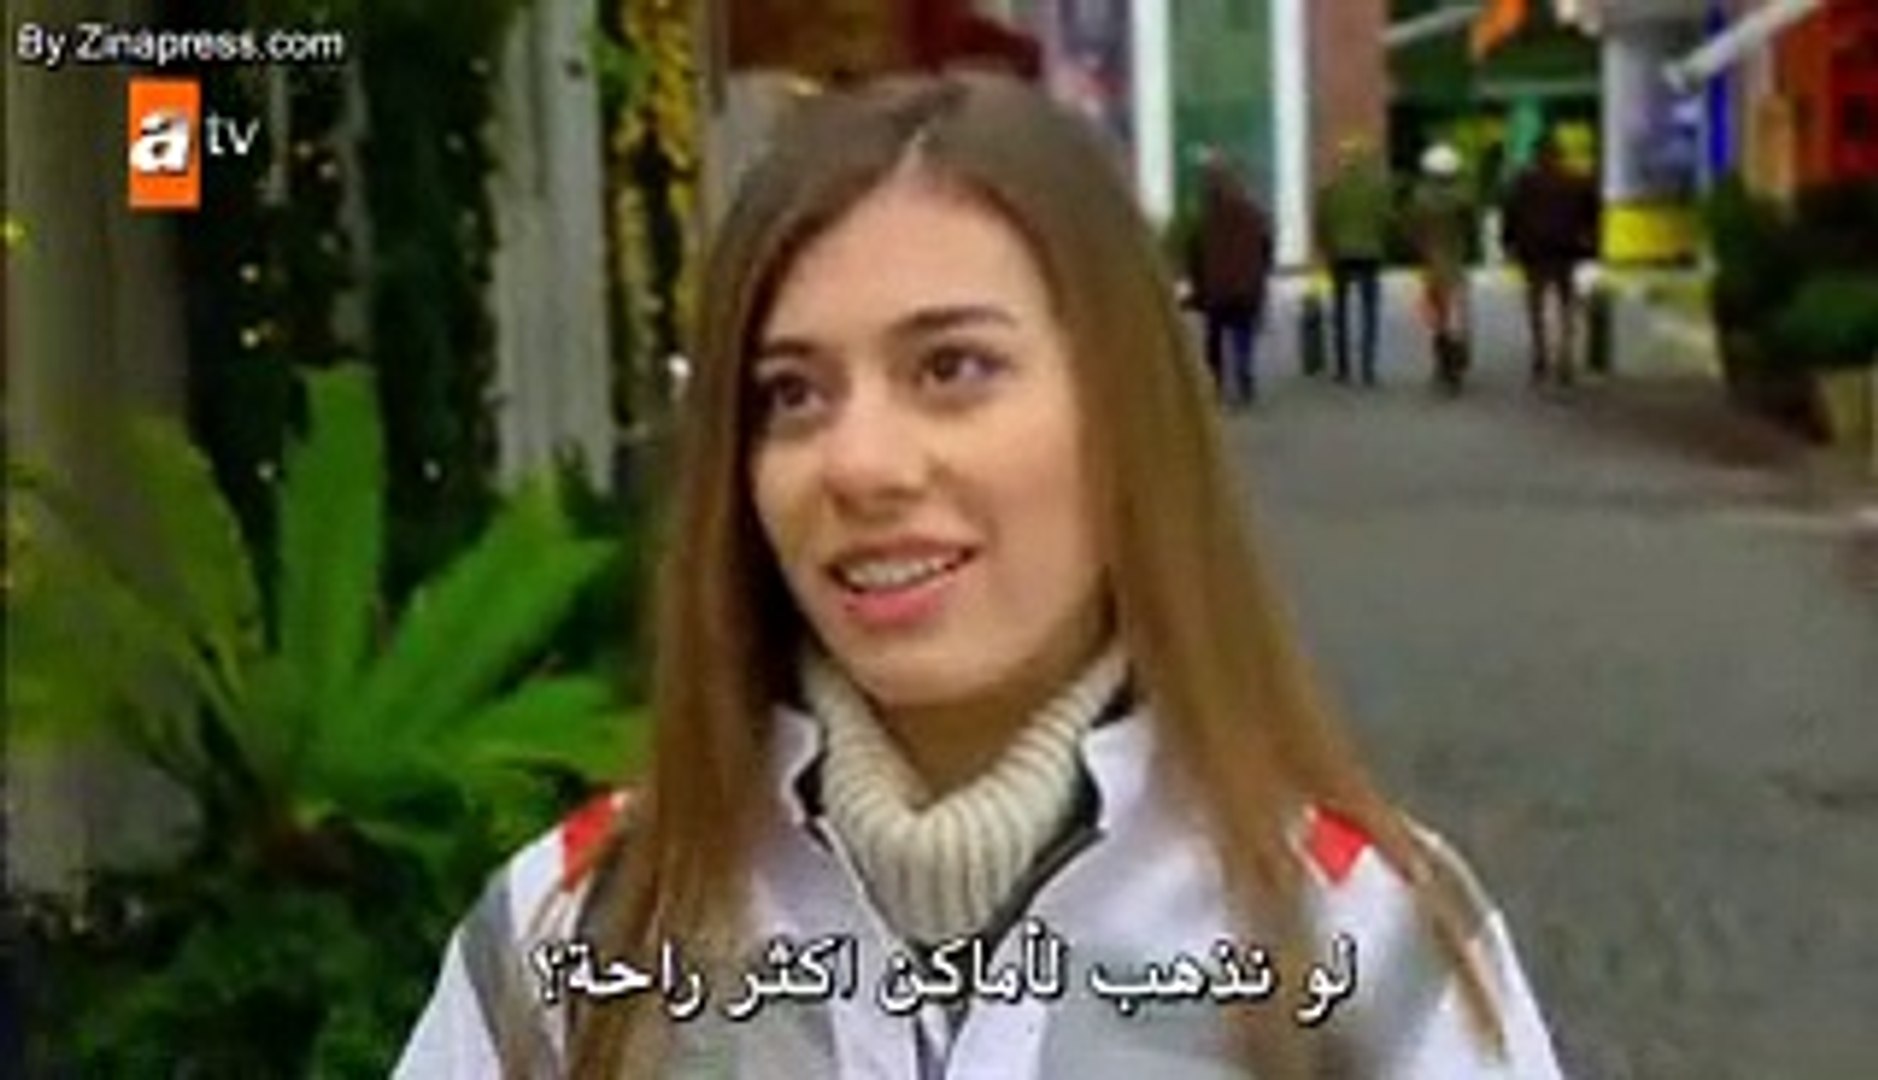 مسلسل سمها ما شئت الحلقة 249 مترجمة للعربية - video Dailymotion